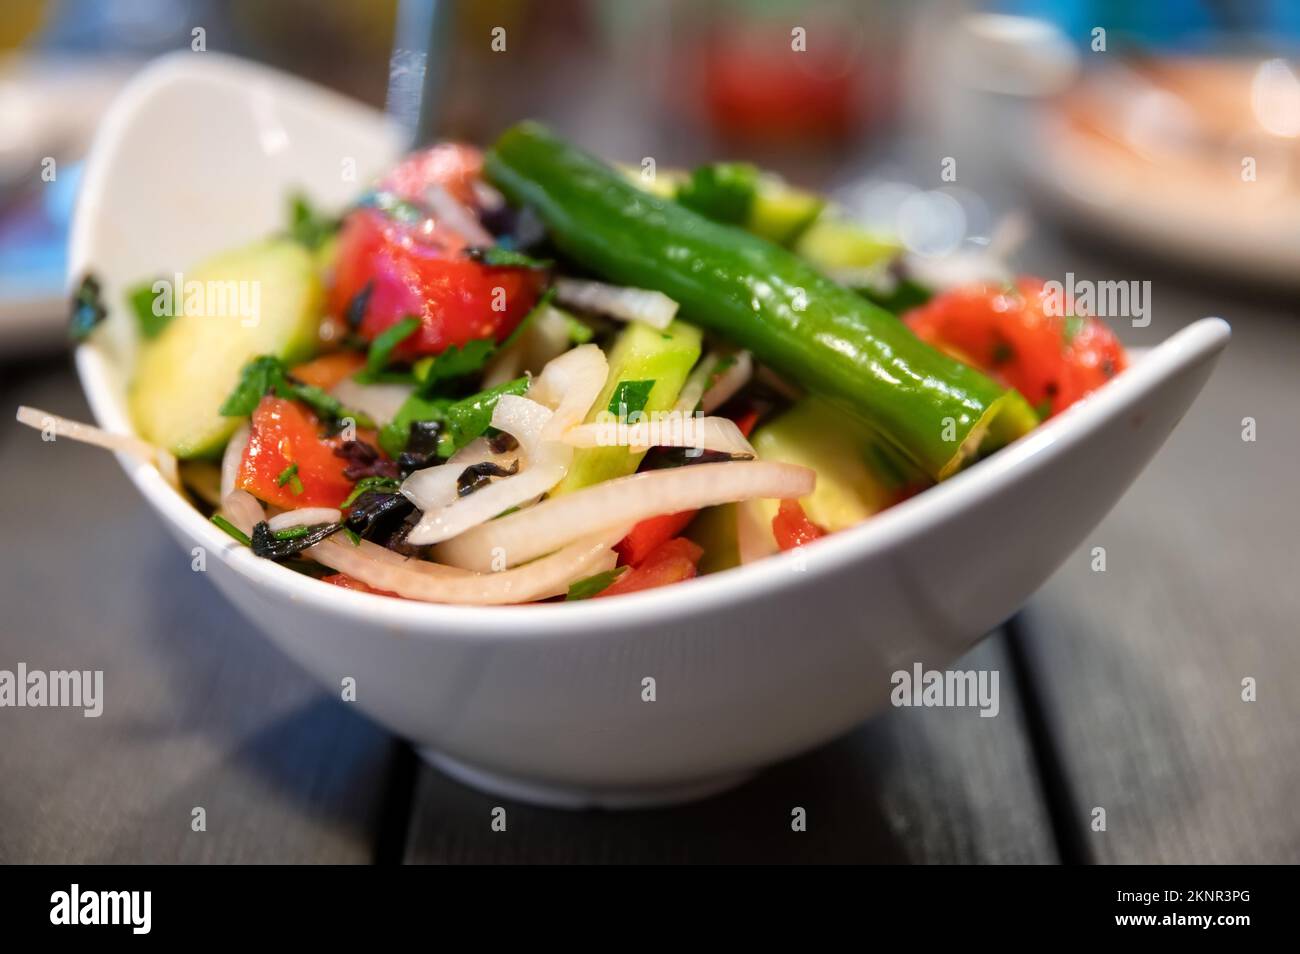 Salade fraîche aux épinards, oignons et tomates avec concombres sur fond rustique. Gros plan et mise au point sélective. Concept d'alimentation saine Banque D'Images